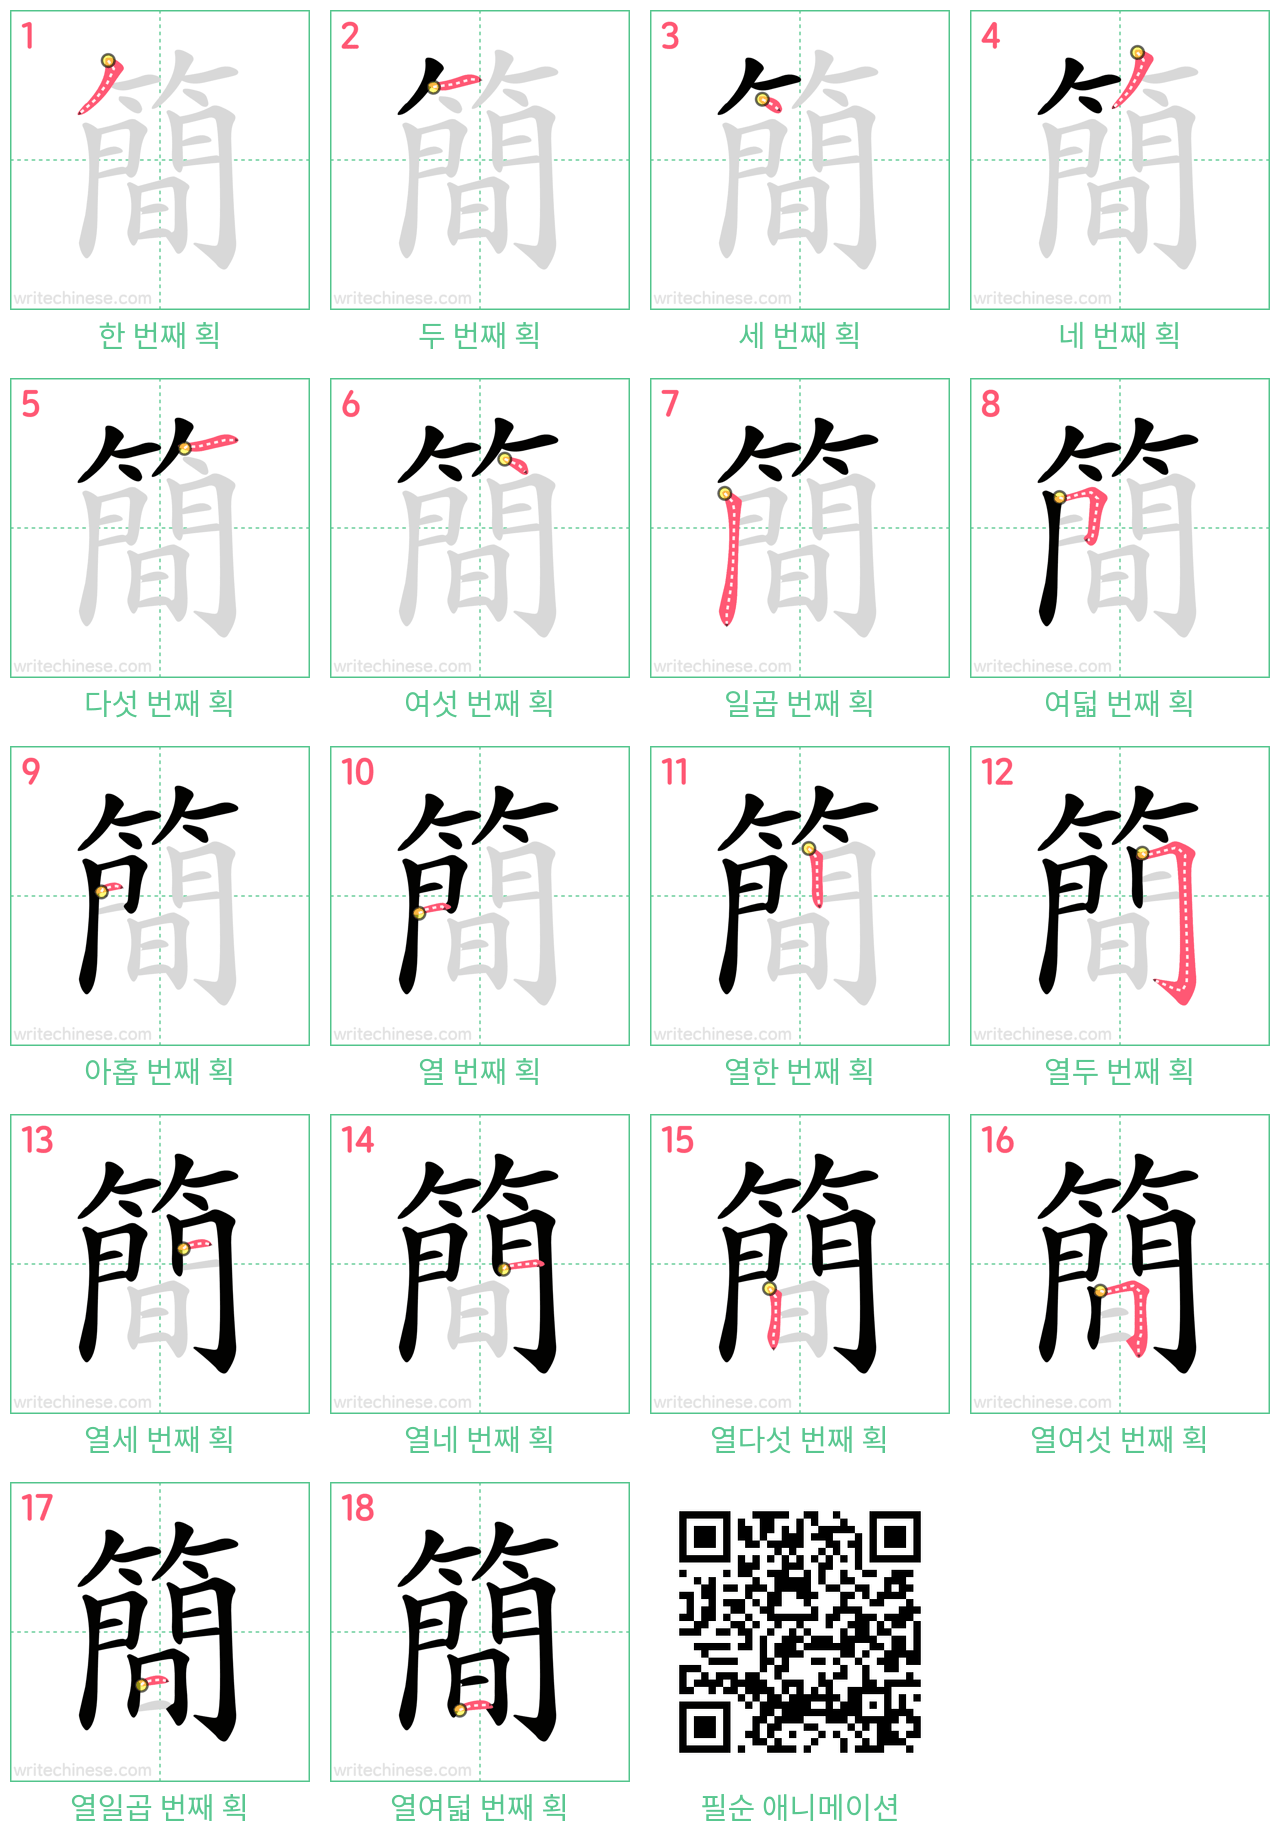 簡 step-by-step stroke order diagrams